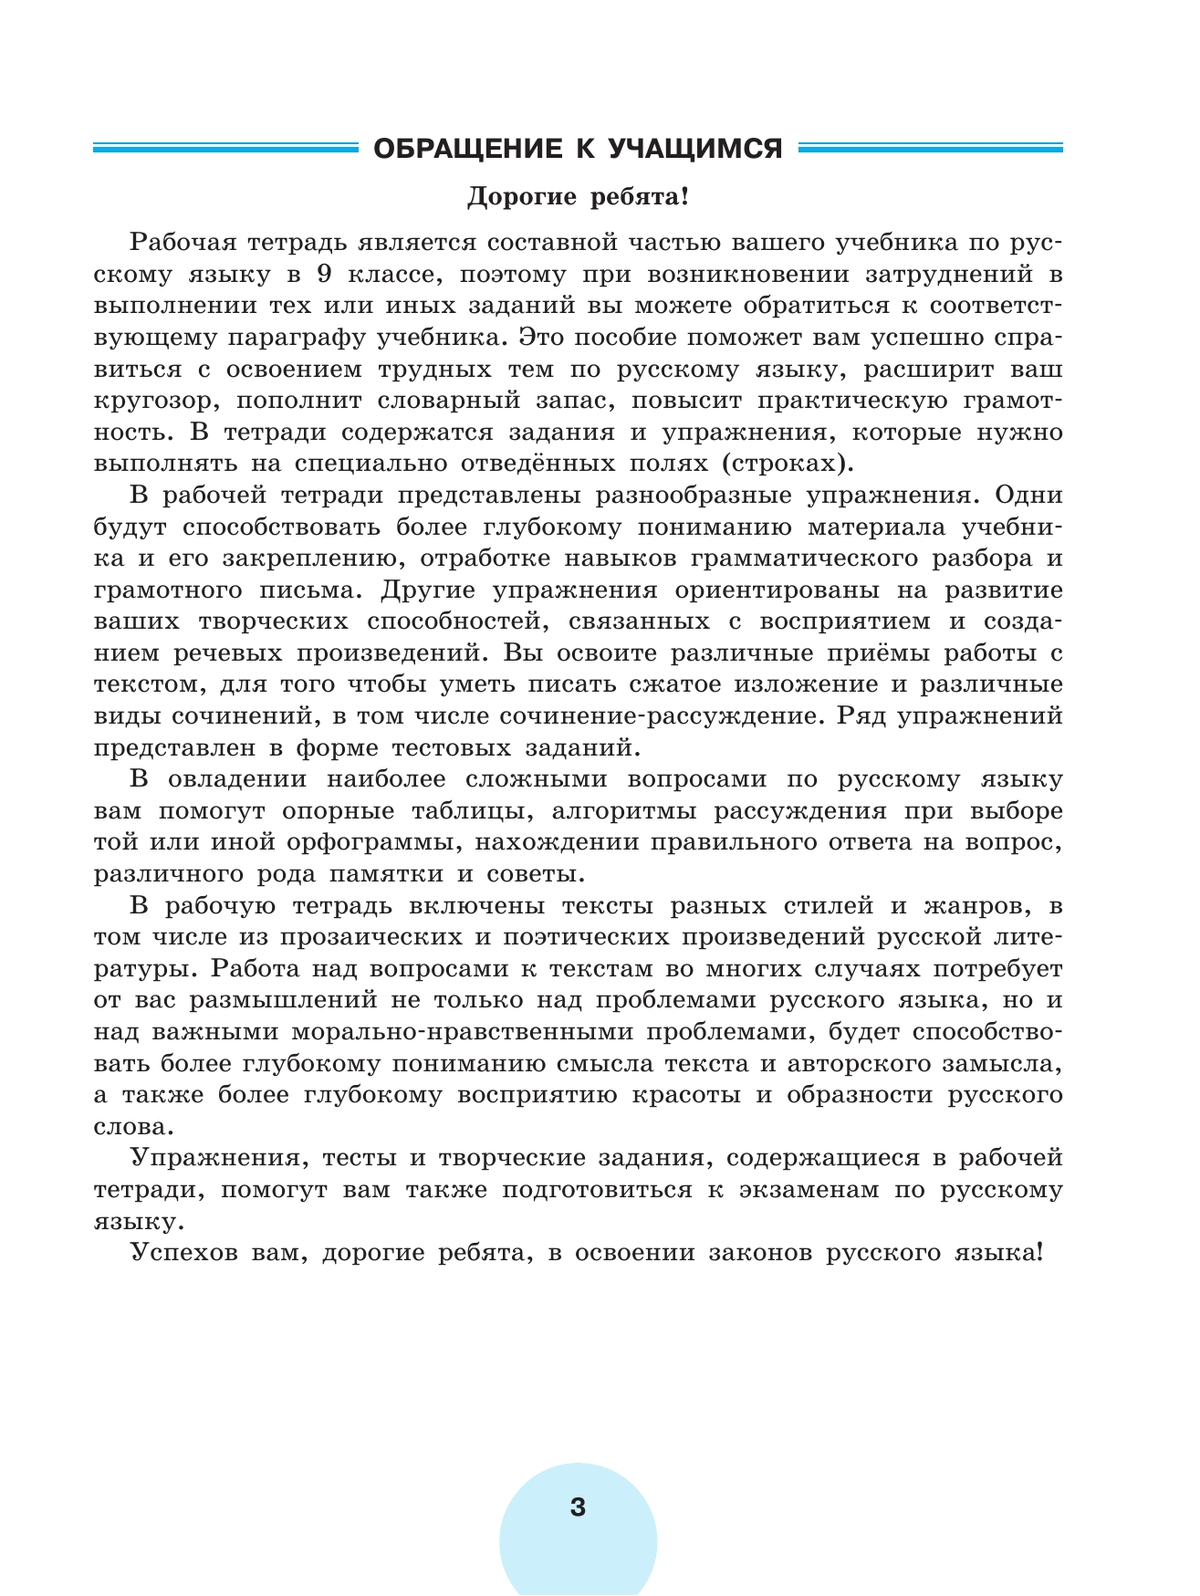 Русский язык. Рабочая тетрадь. 9 класс. В 2 ч. Часть 1 4